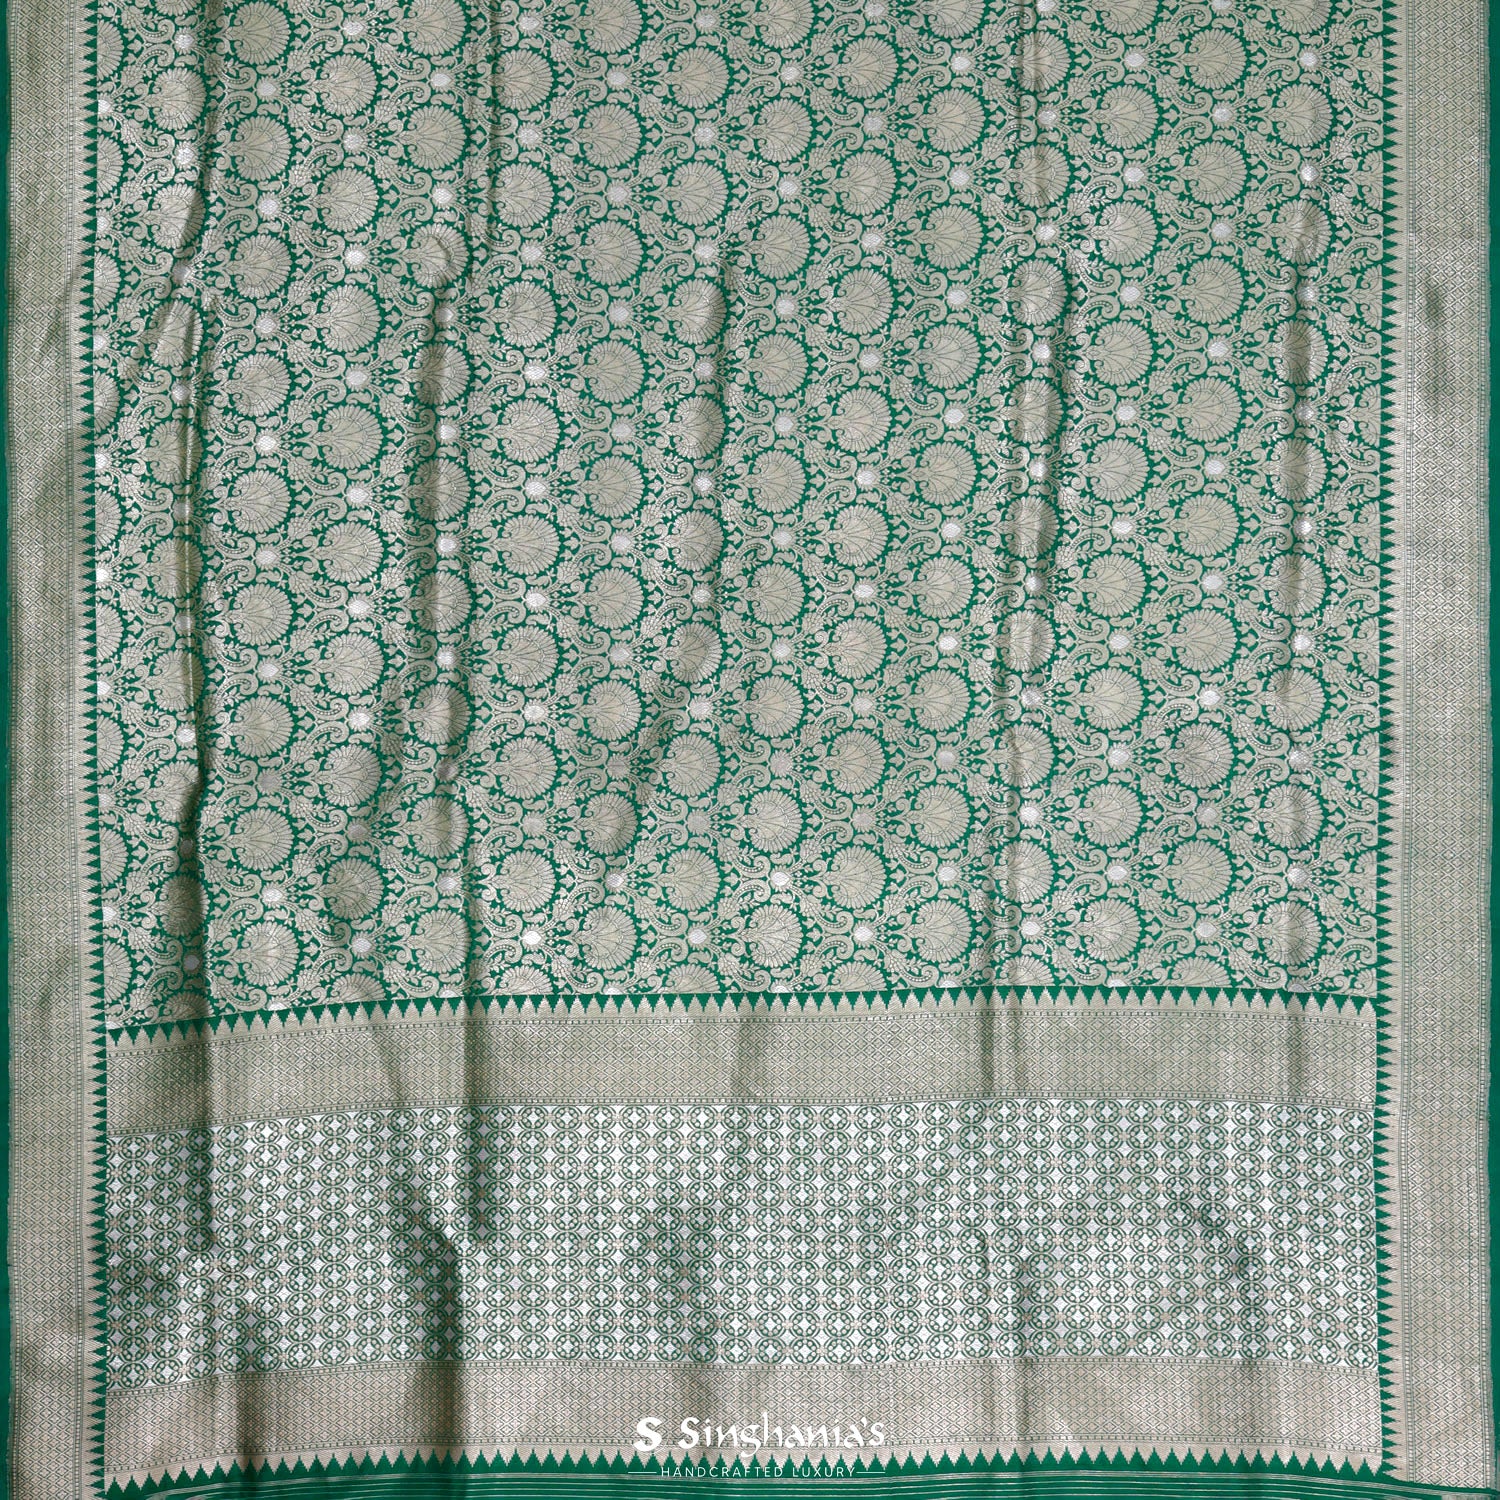 Spanish Viridian Green Silk Saree With Banarasi Weaving